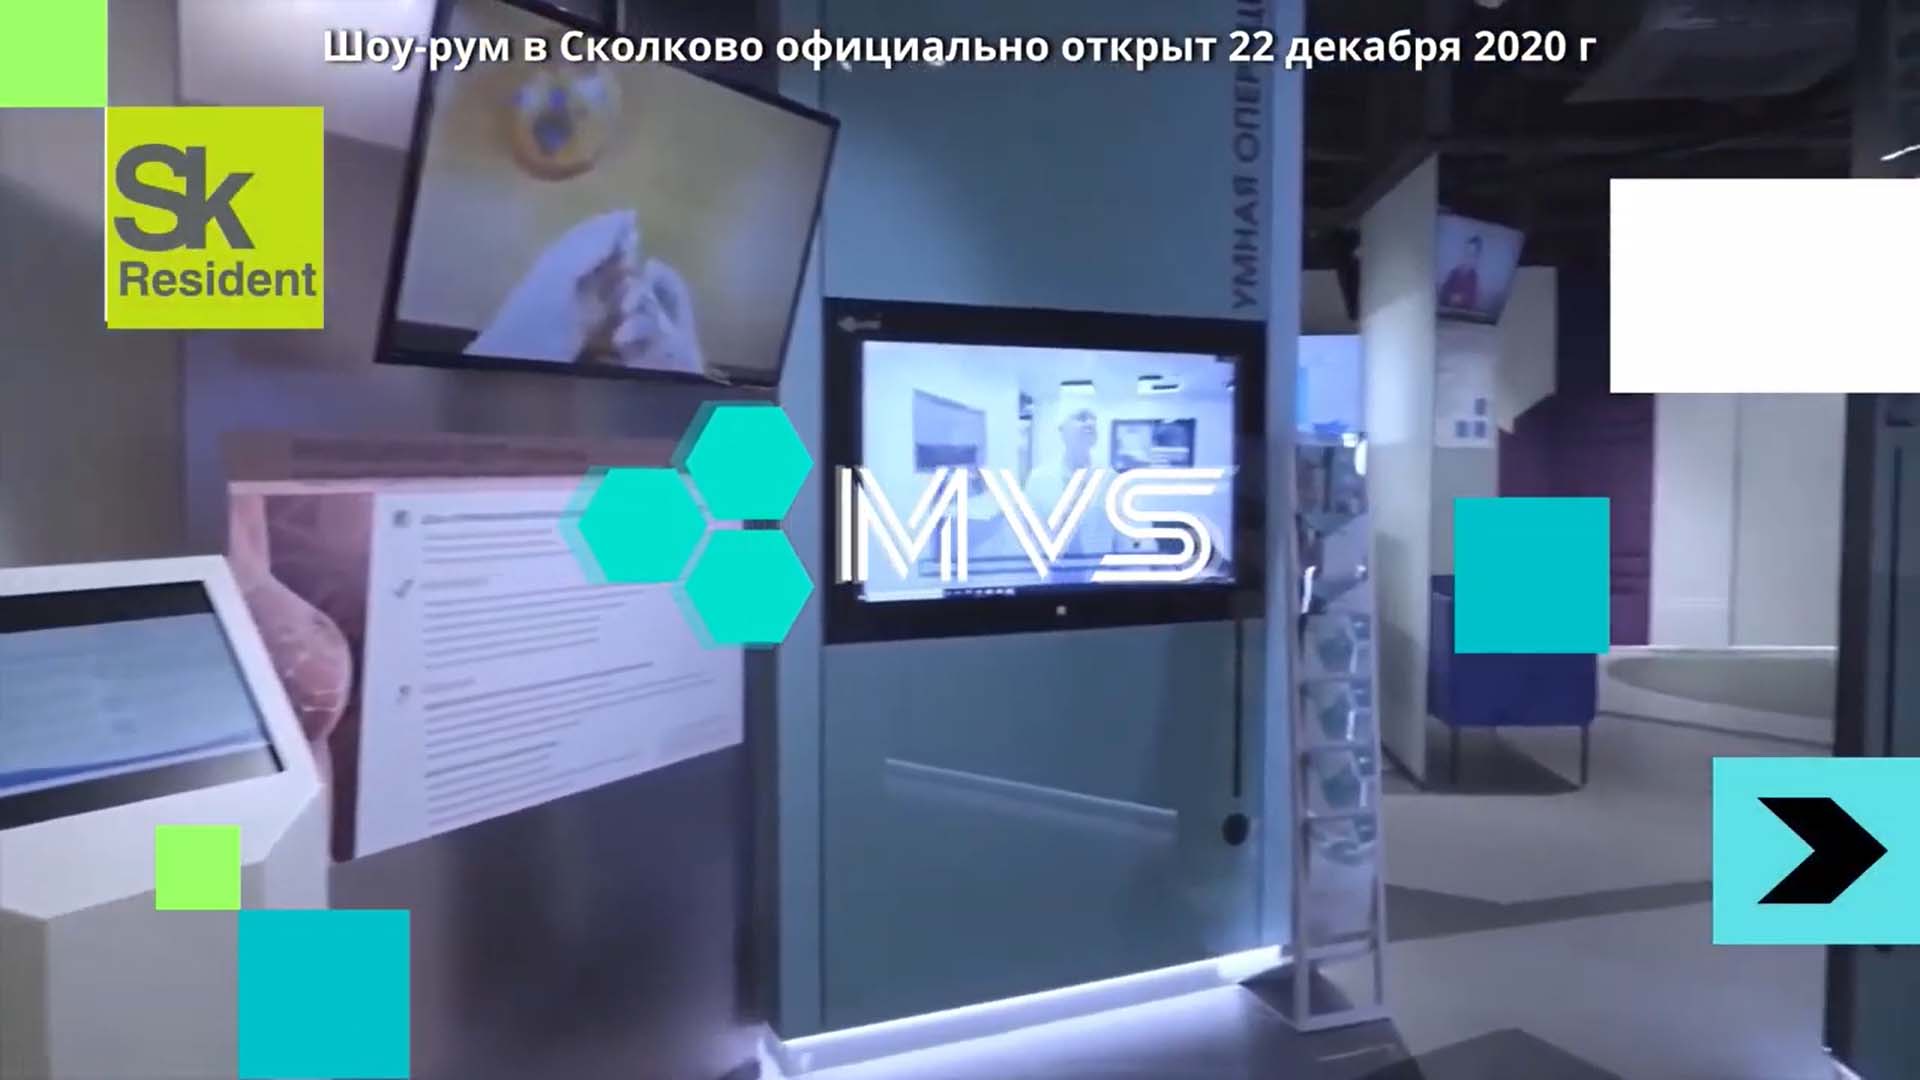 Шоурум Medical Visual Systems - теперь и в Сколково. Умная операционная MVS.